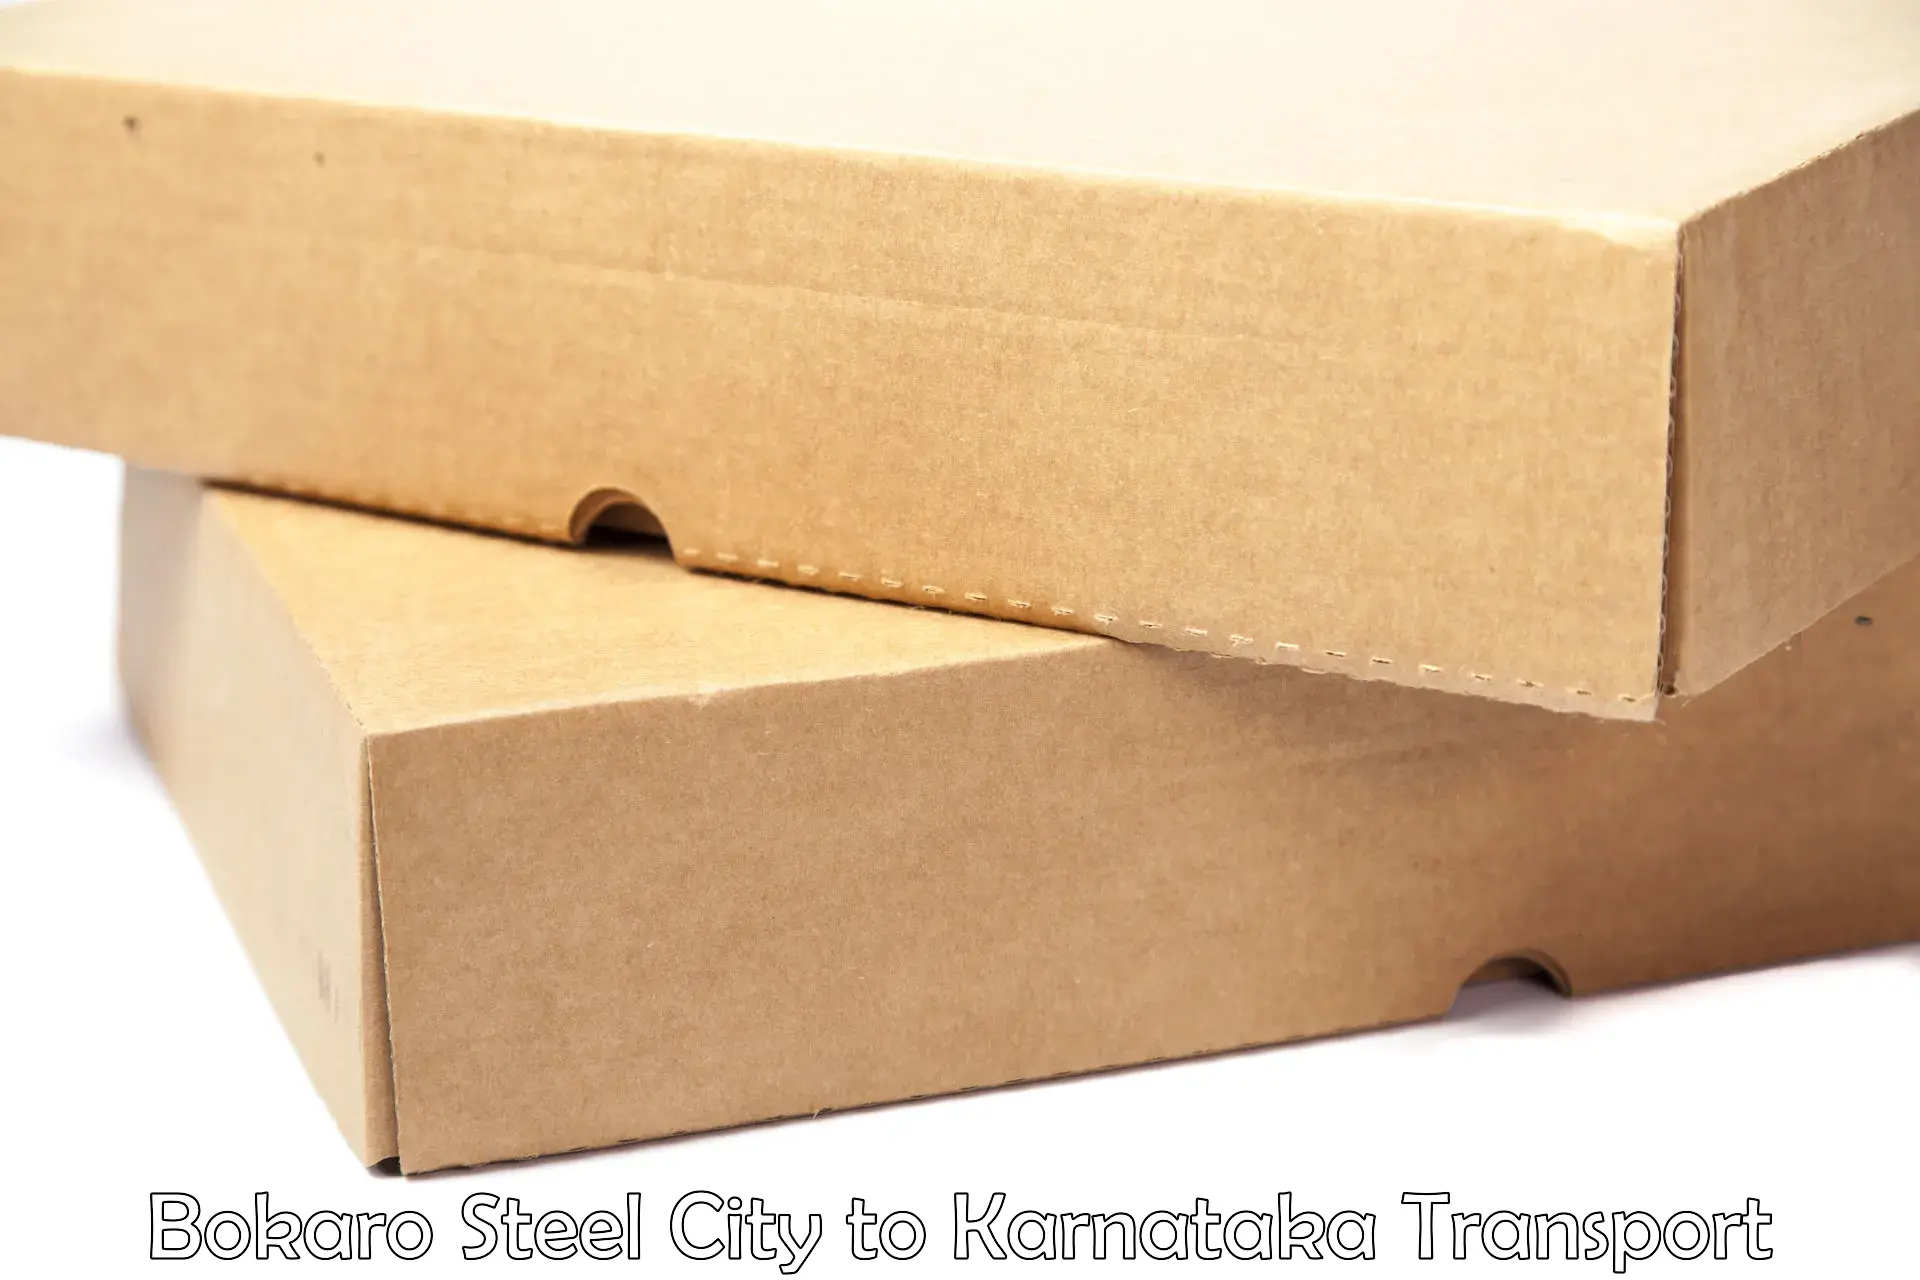 Daily parcel service transport Bokaro Steel City to Dandeli